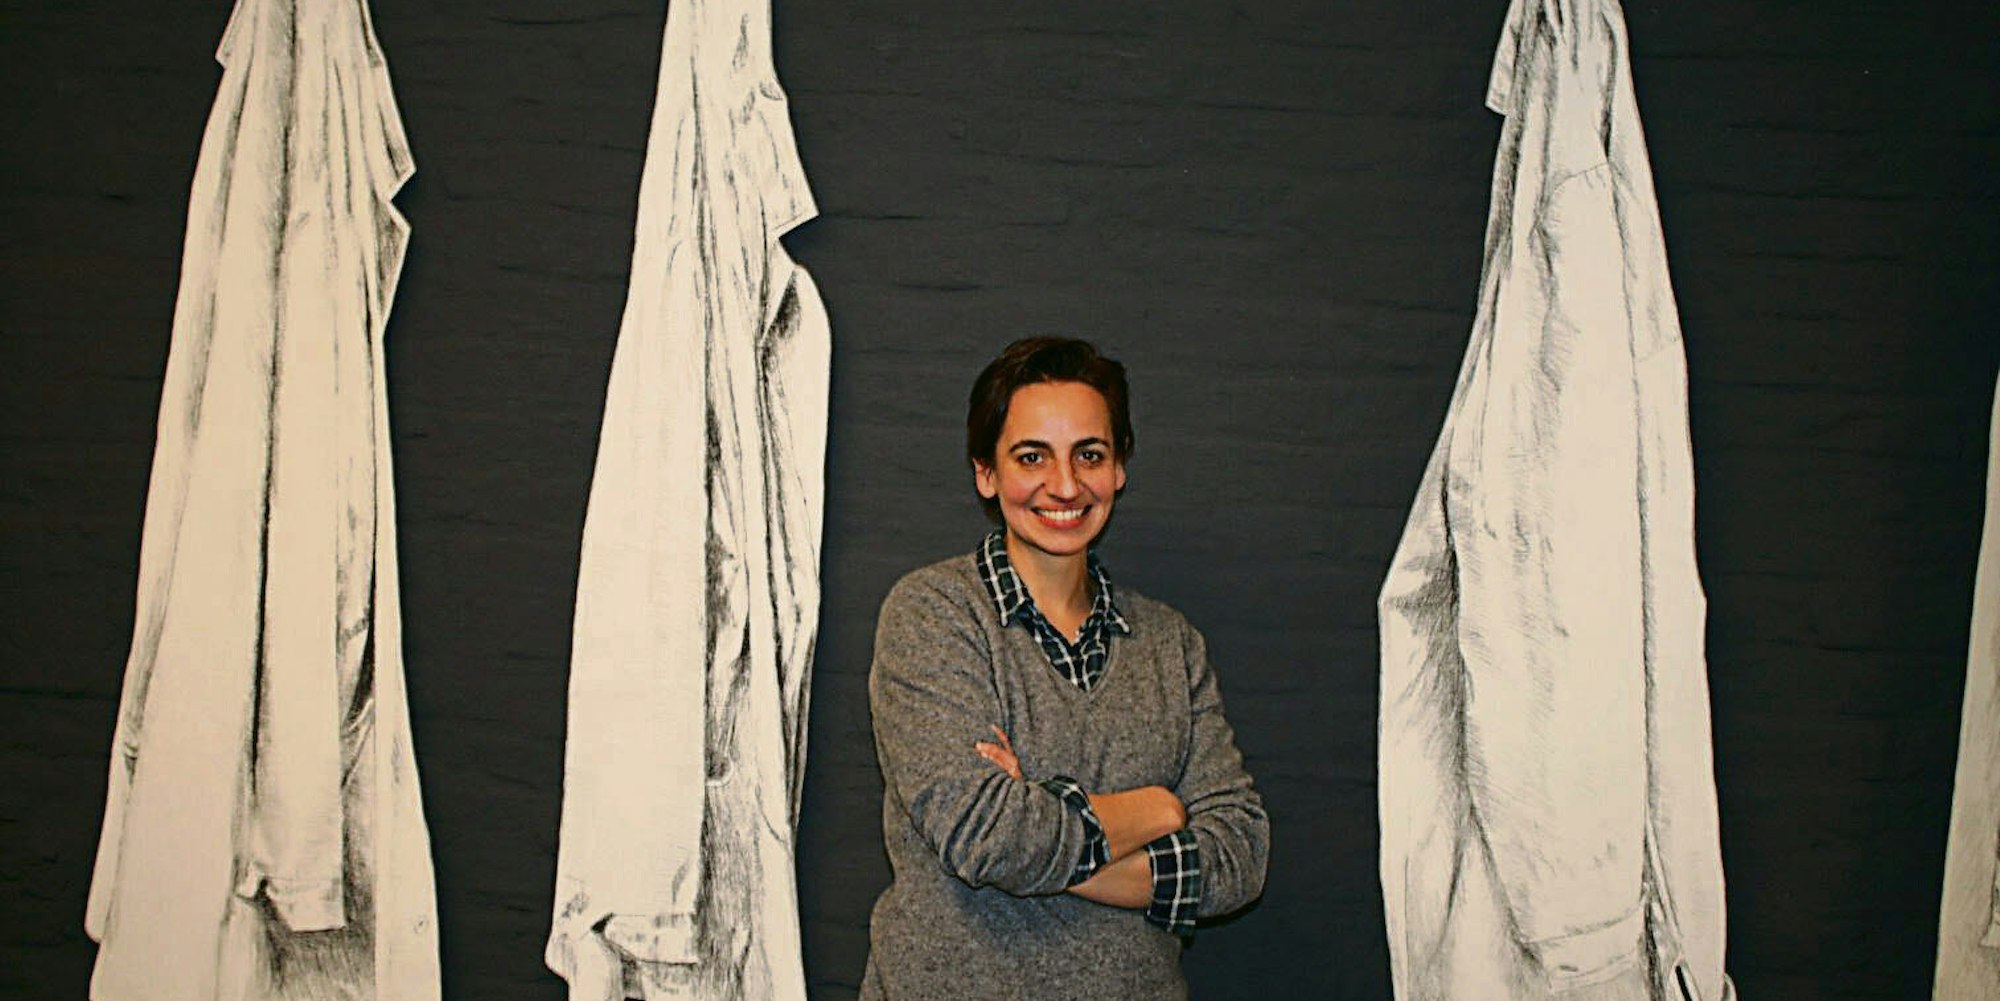 Galeristin Janine Koppelmann führt die Galerie seit elf Jahren gemeinsam mit ihrer Mutter Ingrid.